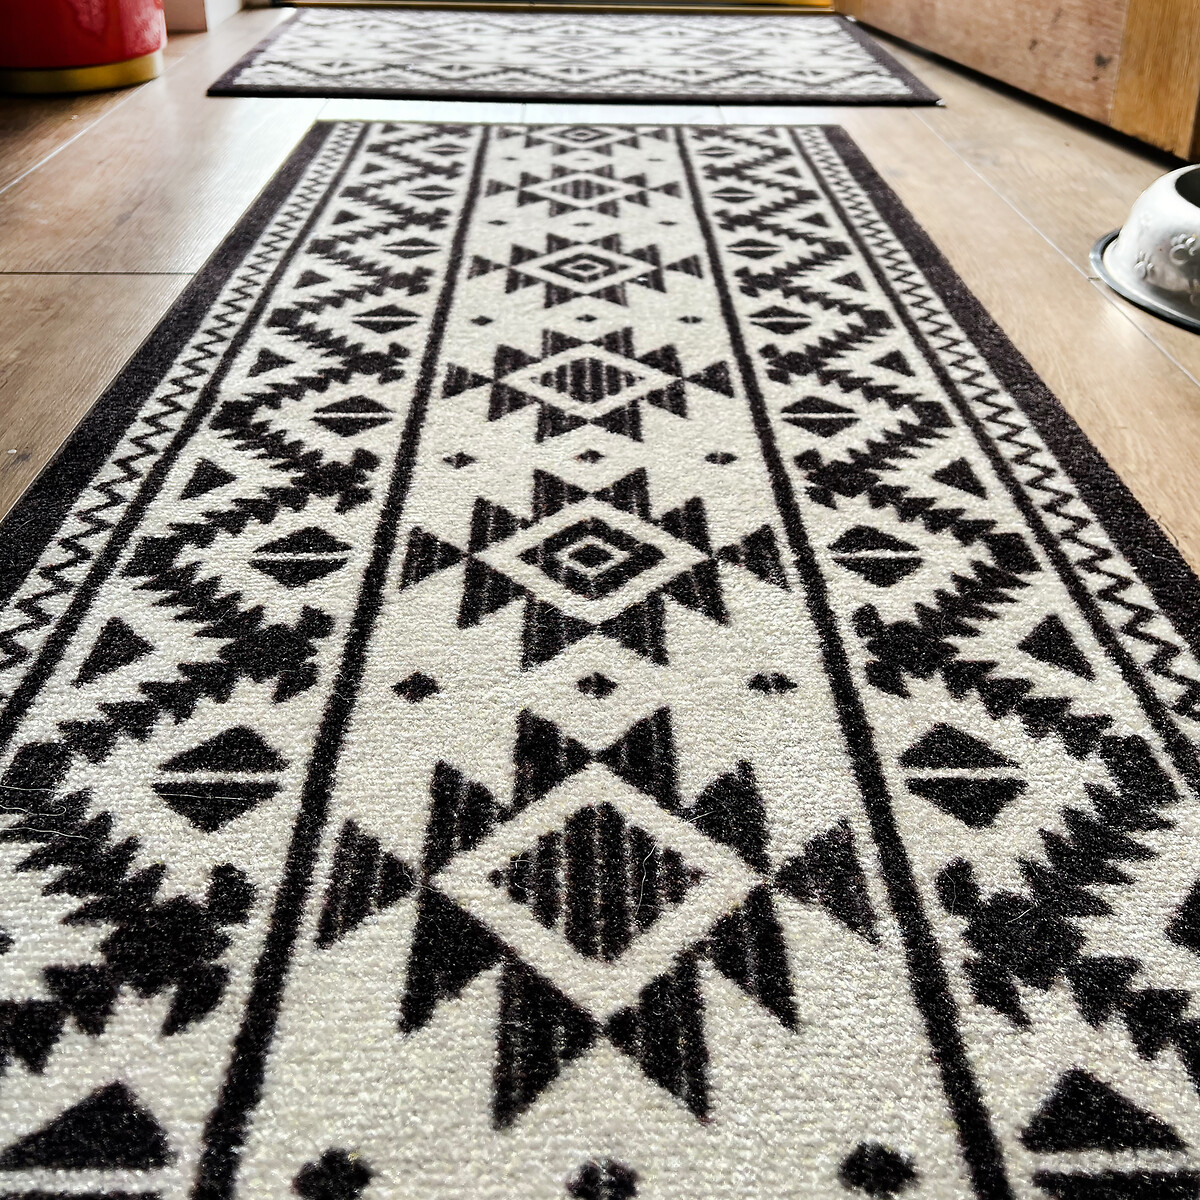 Tribal Pattern Indoor Doormat Runner